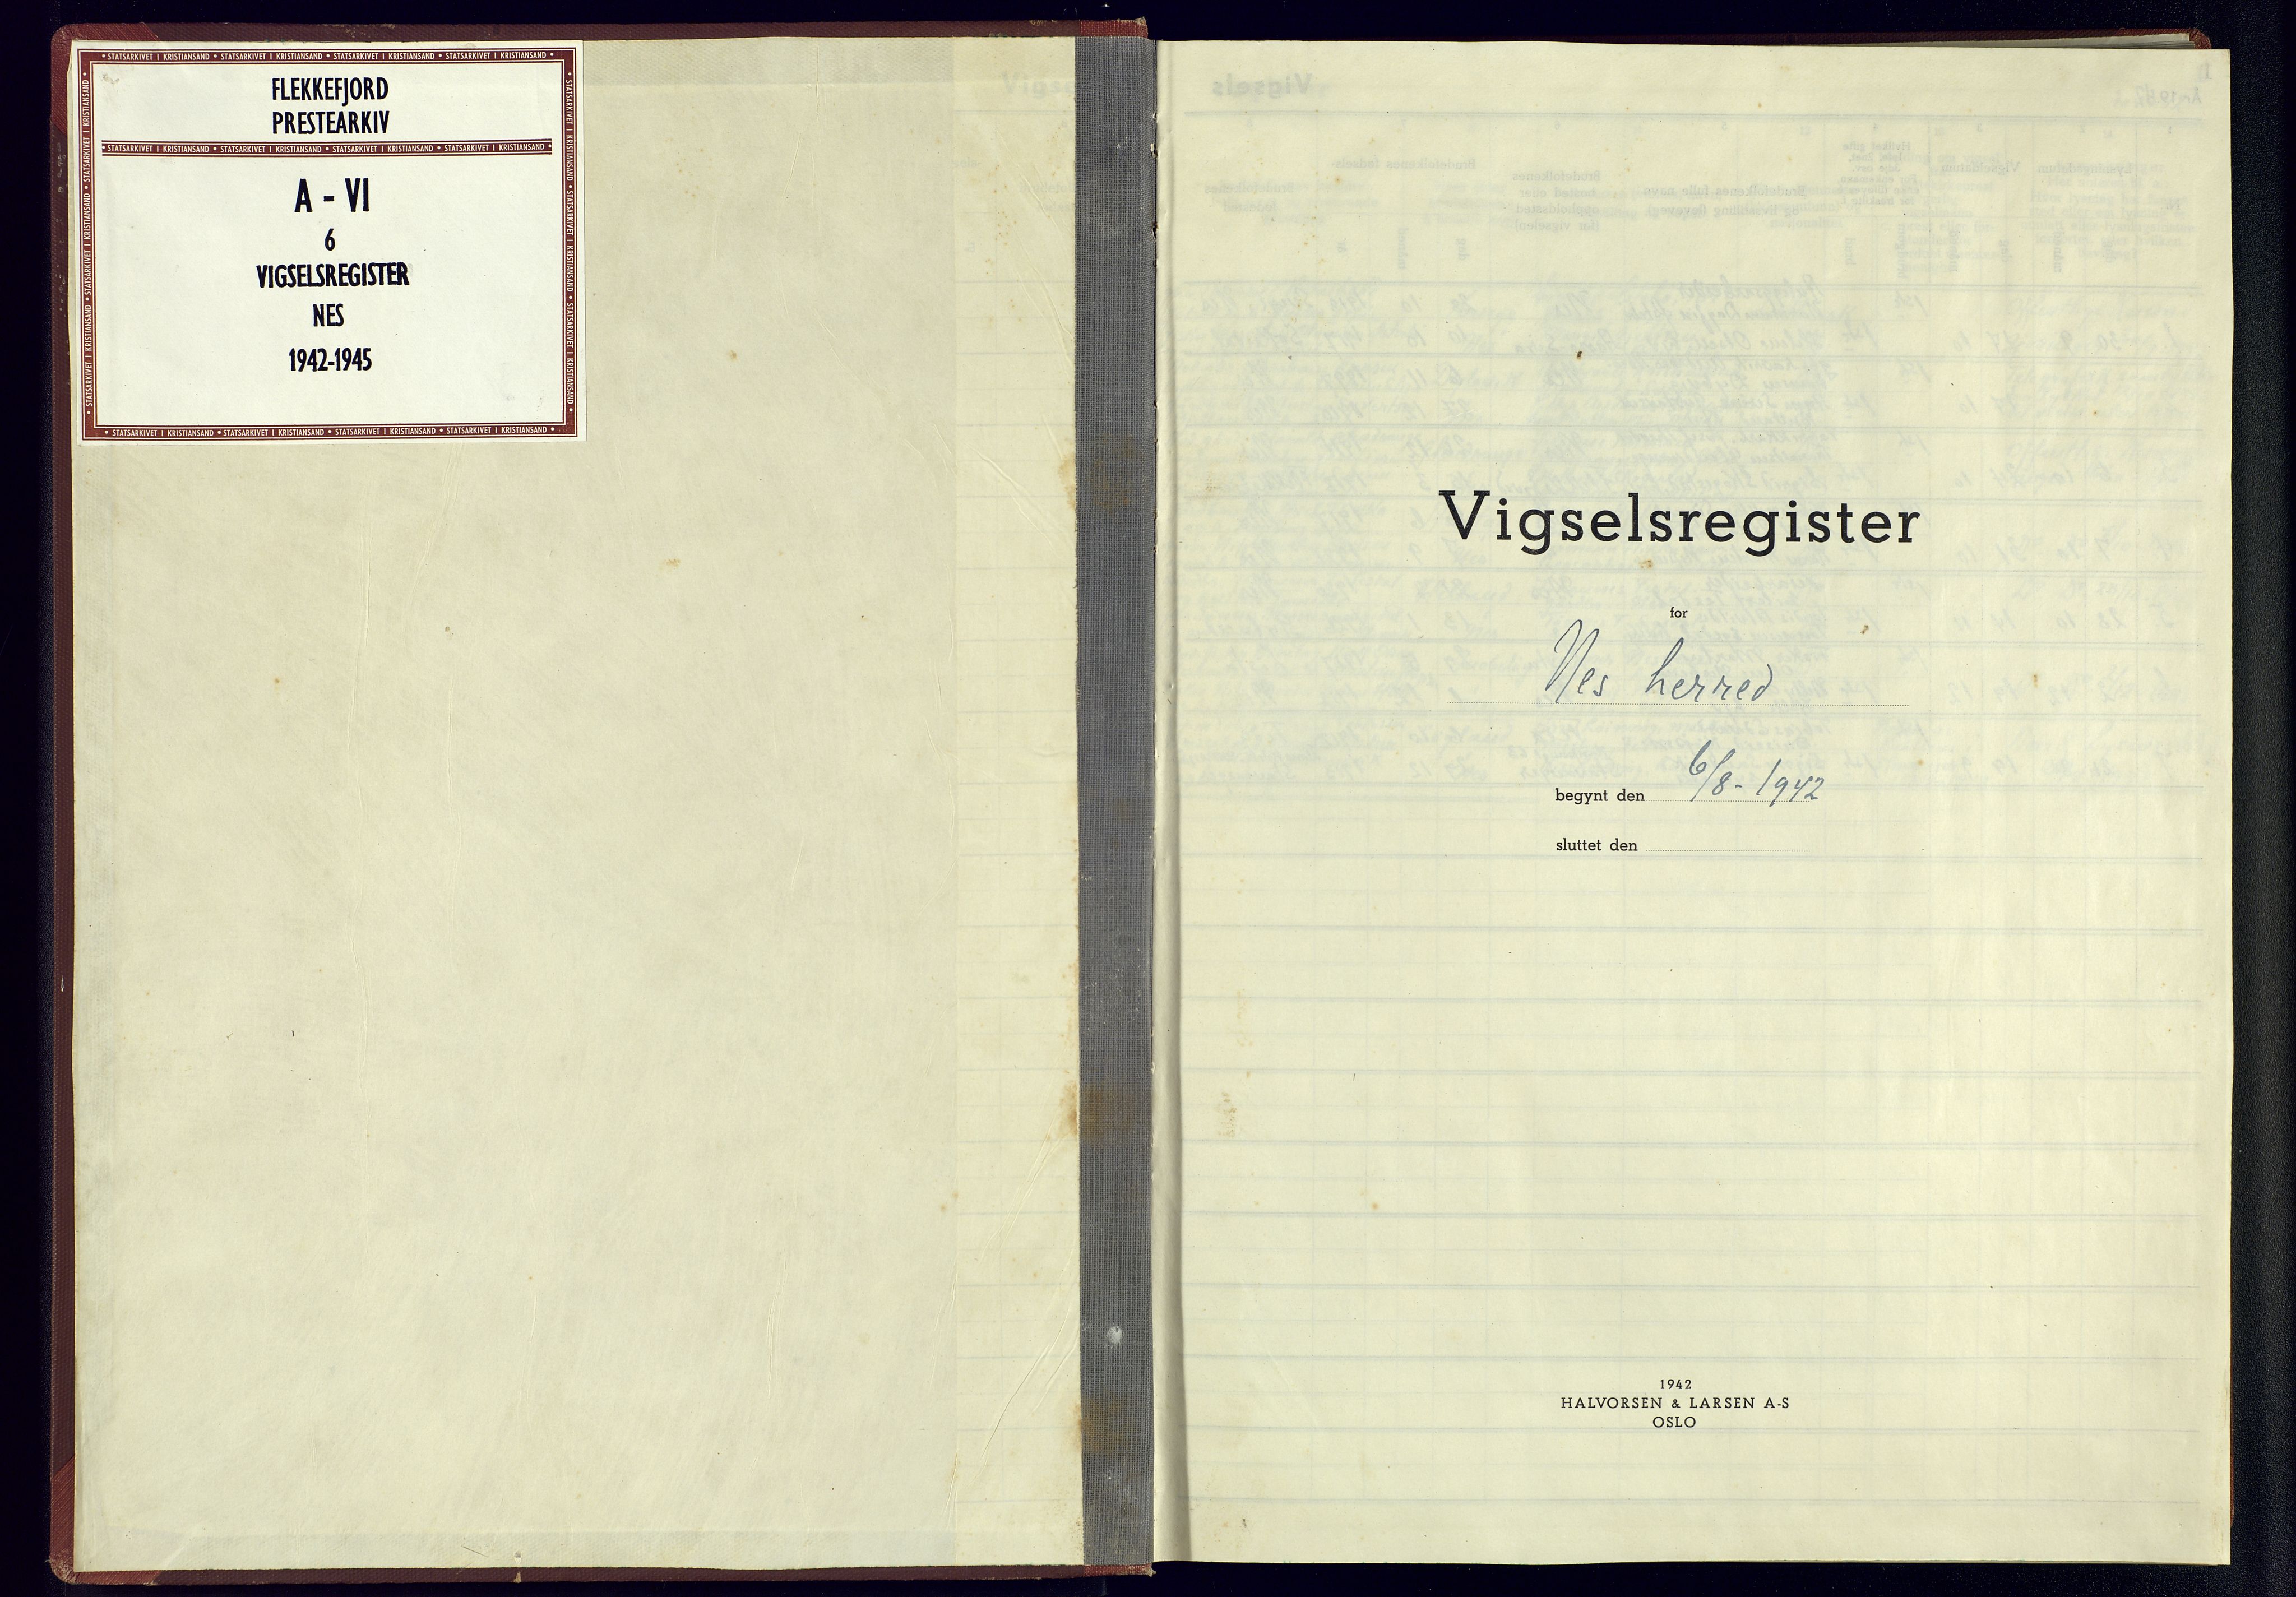 Flekkefjord sokneprestkontor, SAK/1111-0012/J/Jb/L0005: Marriage register no. A-VI-6, 1942-1945